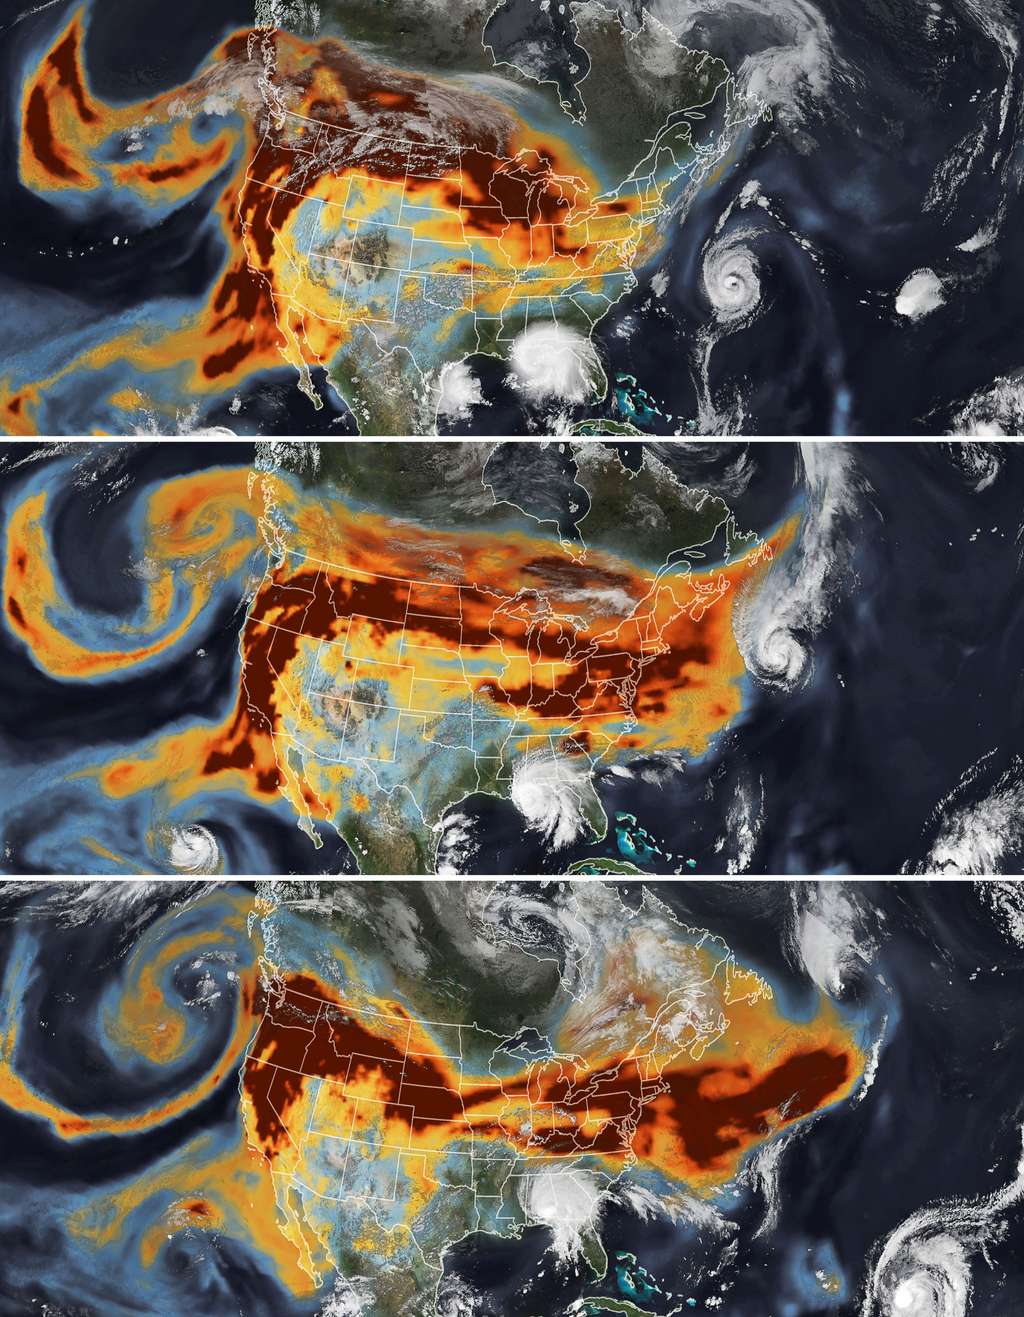 En septembre 2020, les satellites de la Nasa ont saisi des images stupéfiantes des fumées des incendies (en couleurs chaudes sur les images) qui brûlaient alors la côte ouest des États-Unis pris dans les tourbillons de deux ouragans : Paulette (en haut à droite de la 2<sup>e</sup> image) et Sally (en bas au centre de la 2<sup>e</sup> image). © <em>Nasa Earth Observatory</em>